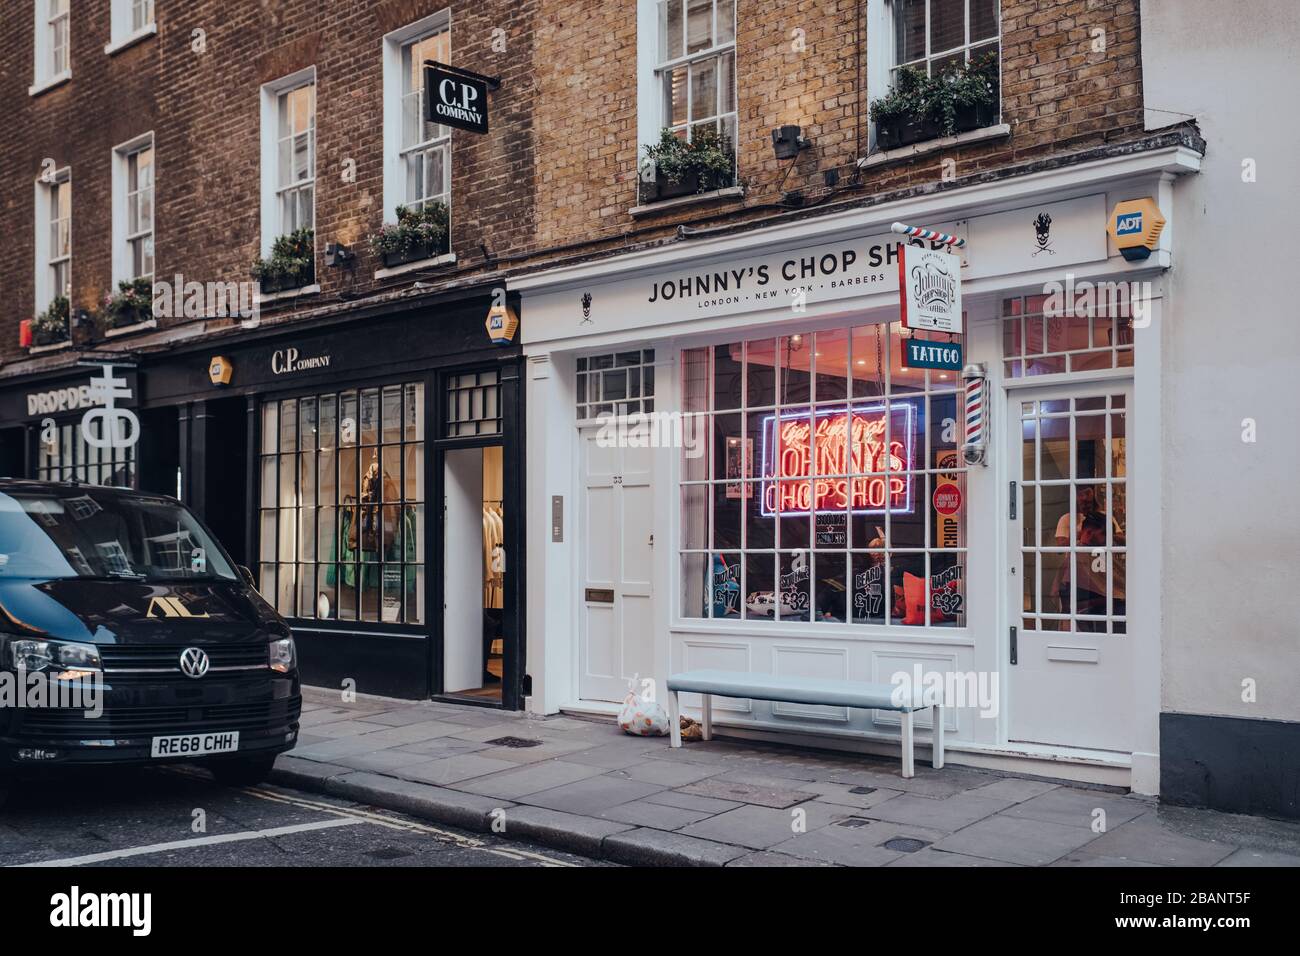 Londra, Regno Unito - 06 marzo 2020: Facciata del negozio di barbiere Johnnys Chop Shop a Soho, una famosa area turistica di Londra con numerosi negozi e ristoranti. Foto Stock